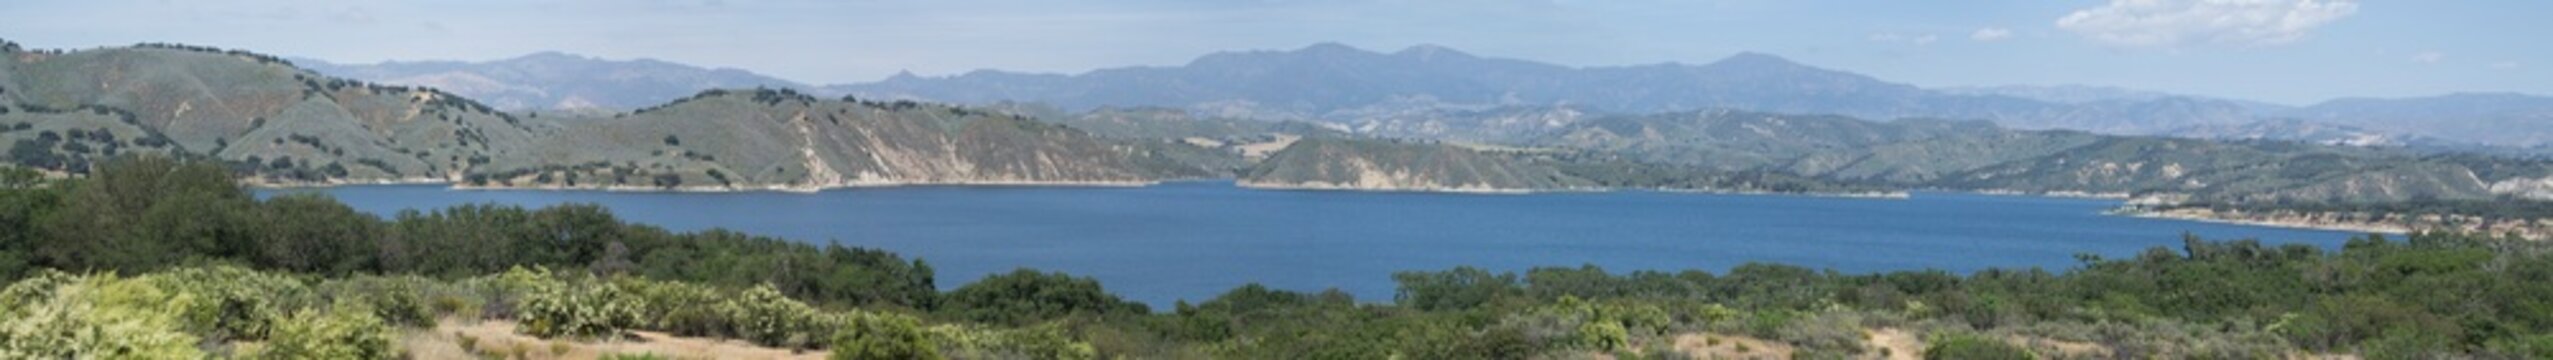 Cachuma Lake California panorama